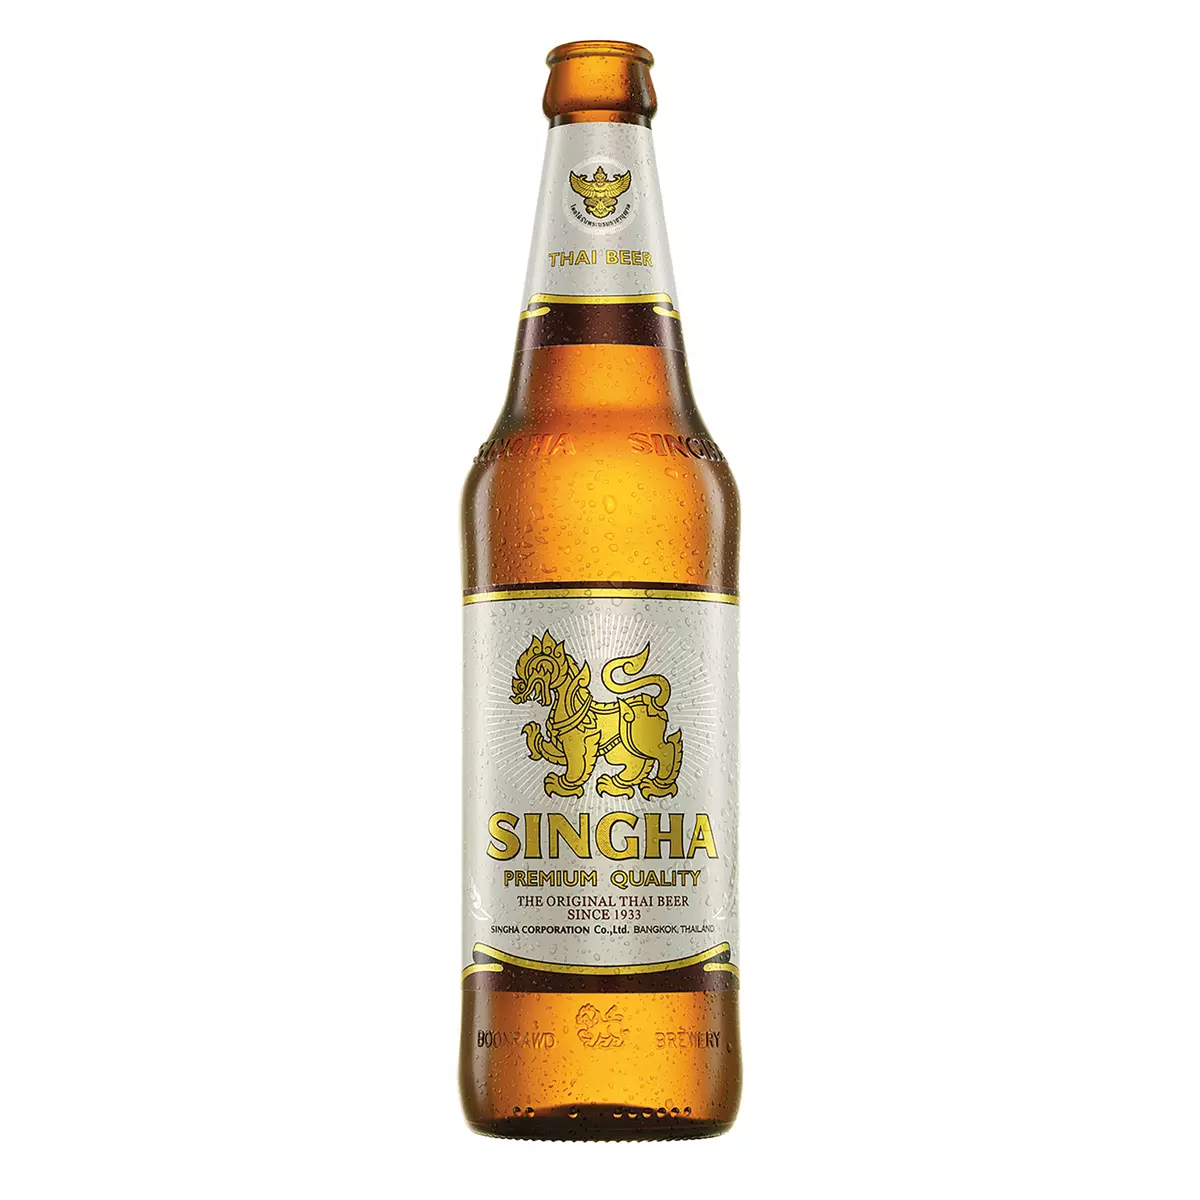 Bière blonde thaïlandaise 5% bouteille 33cl